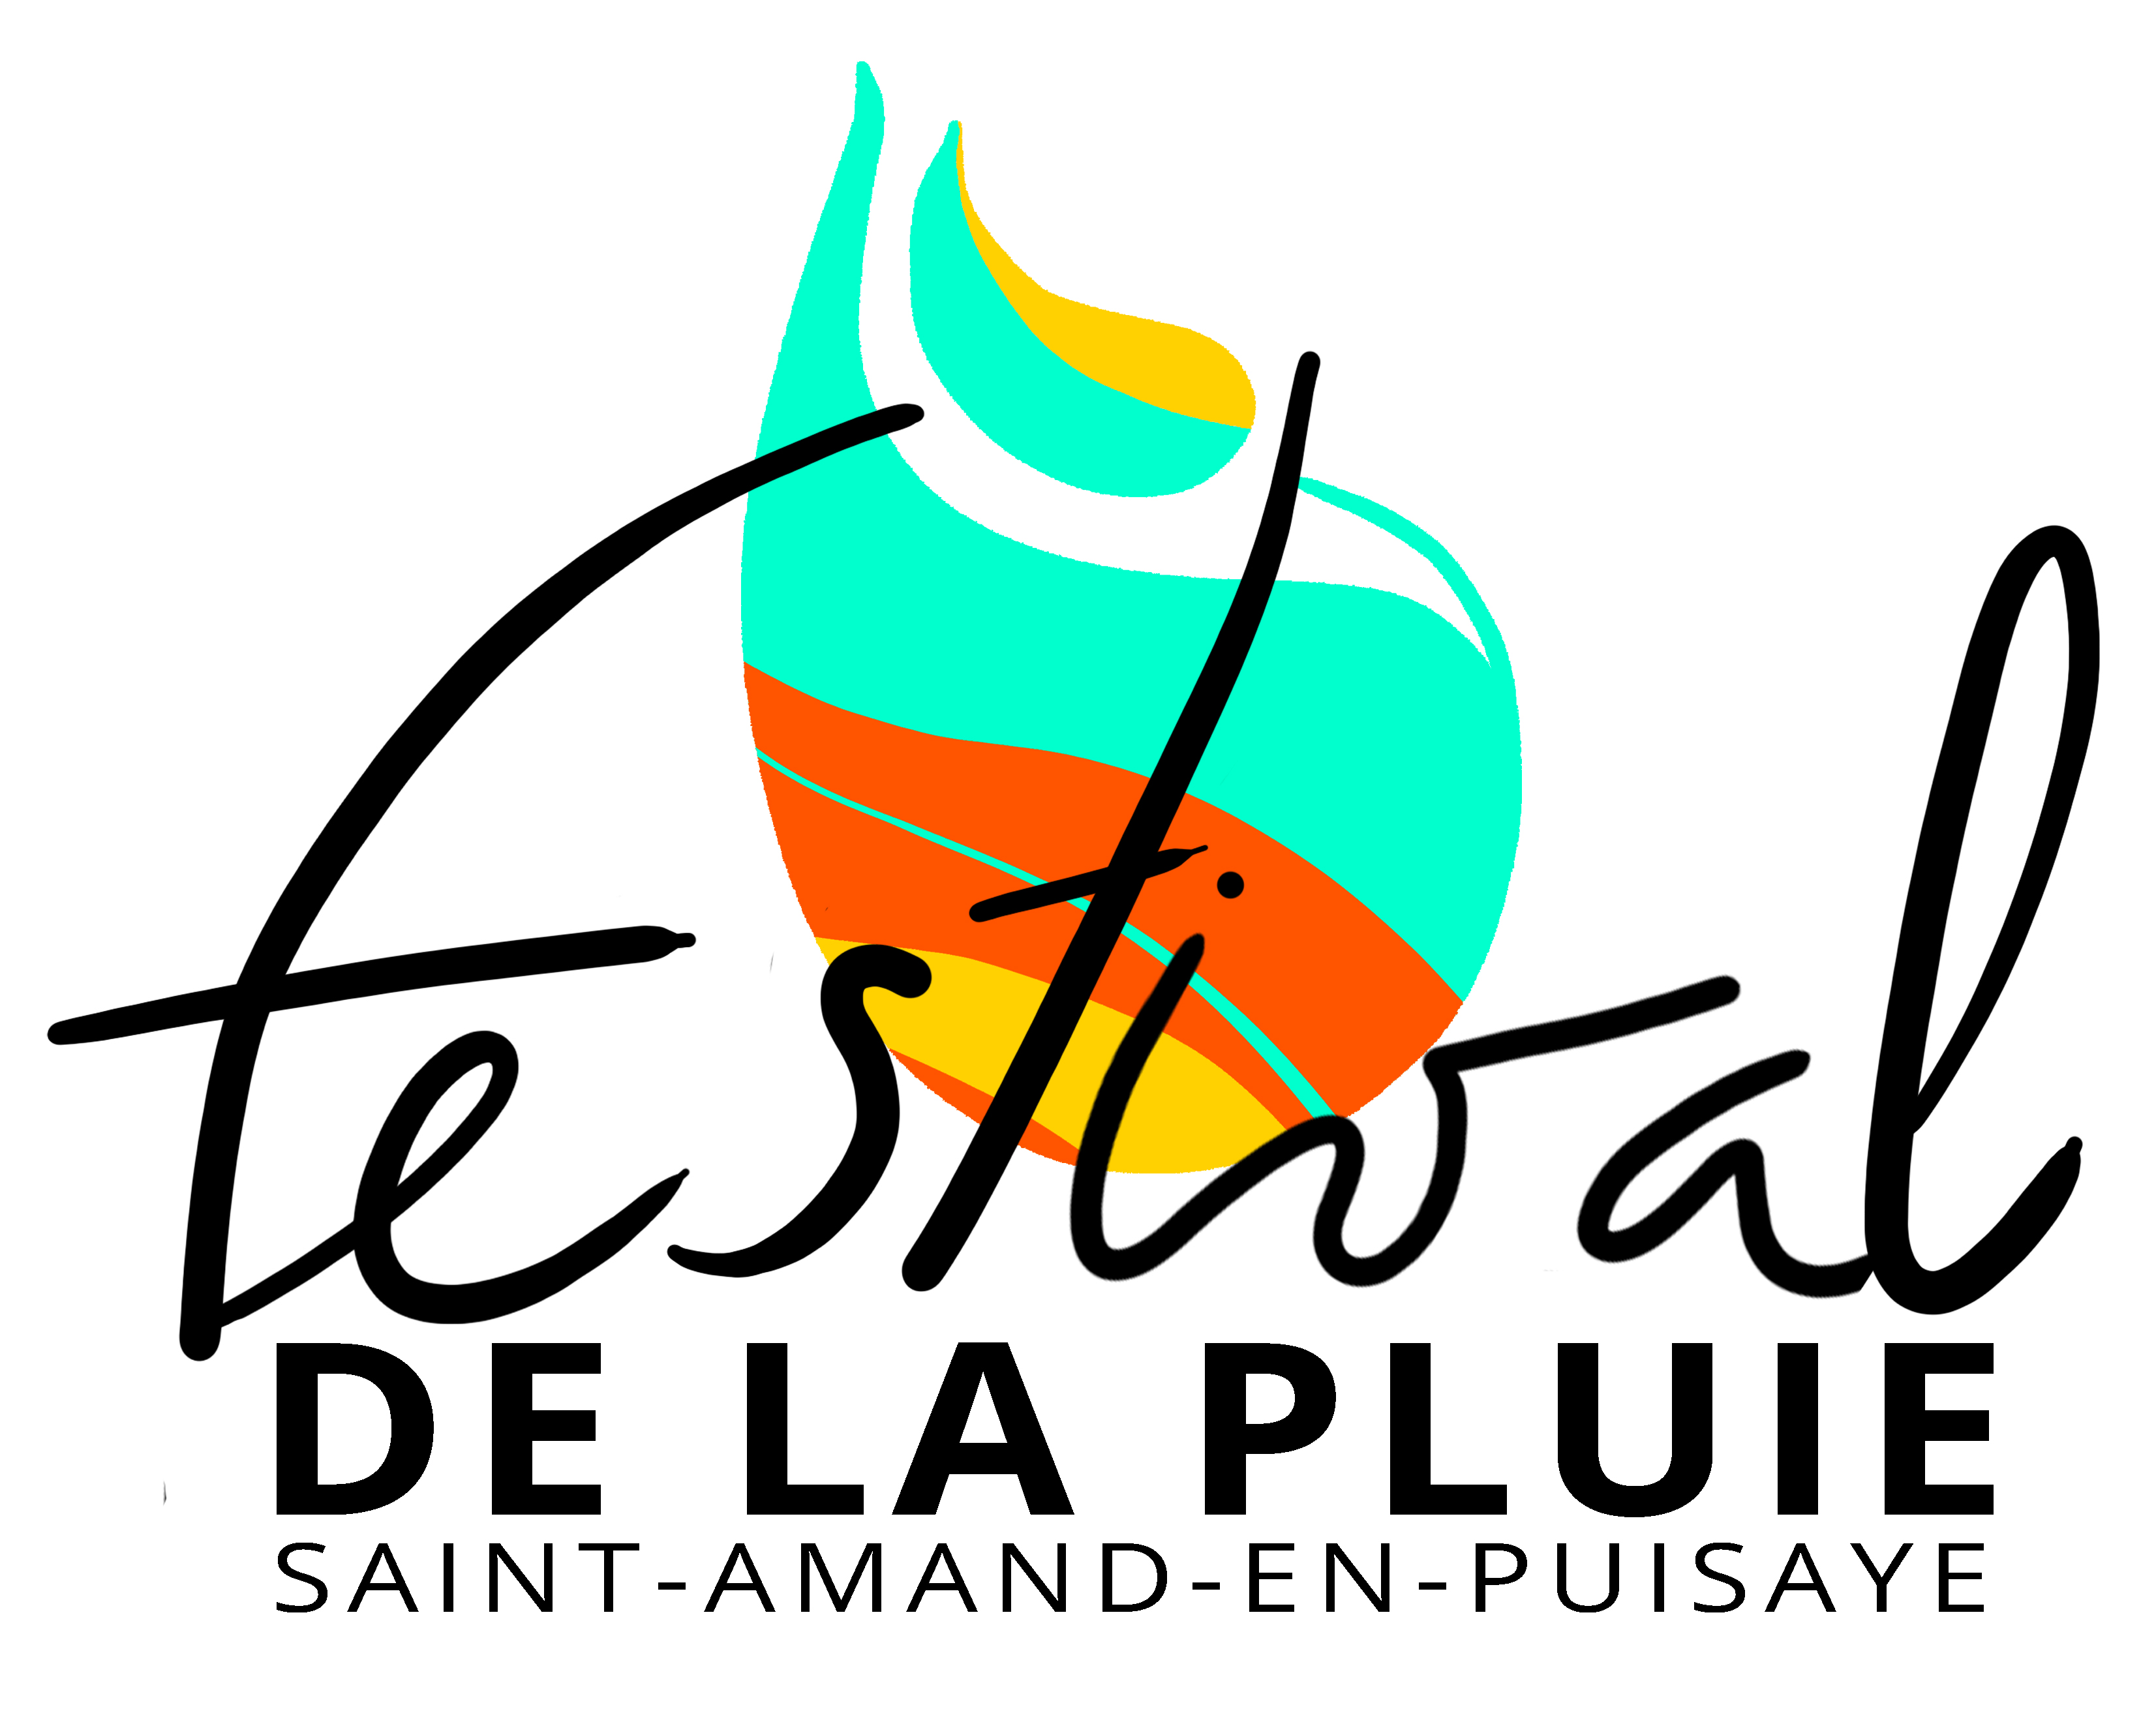 FDLP - logo - Crédits : Festival de la pluie